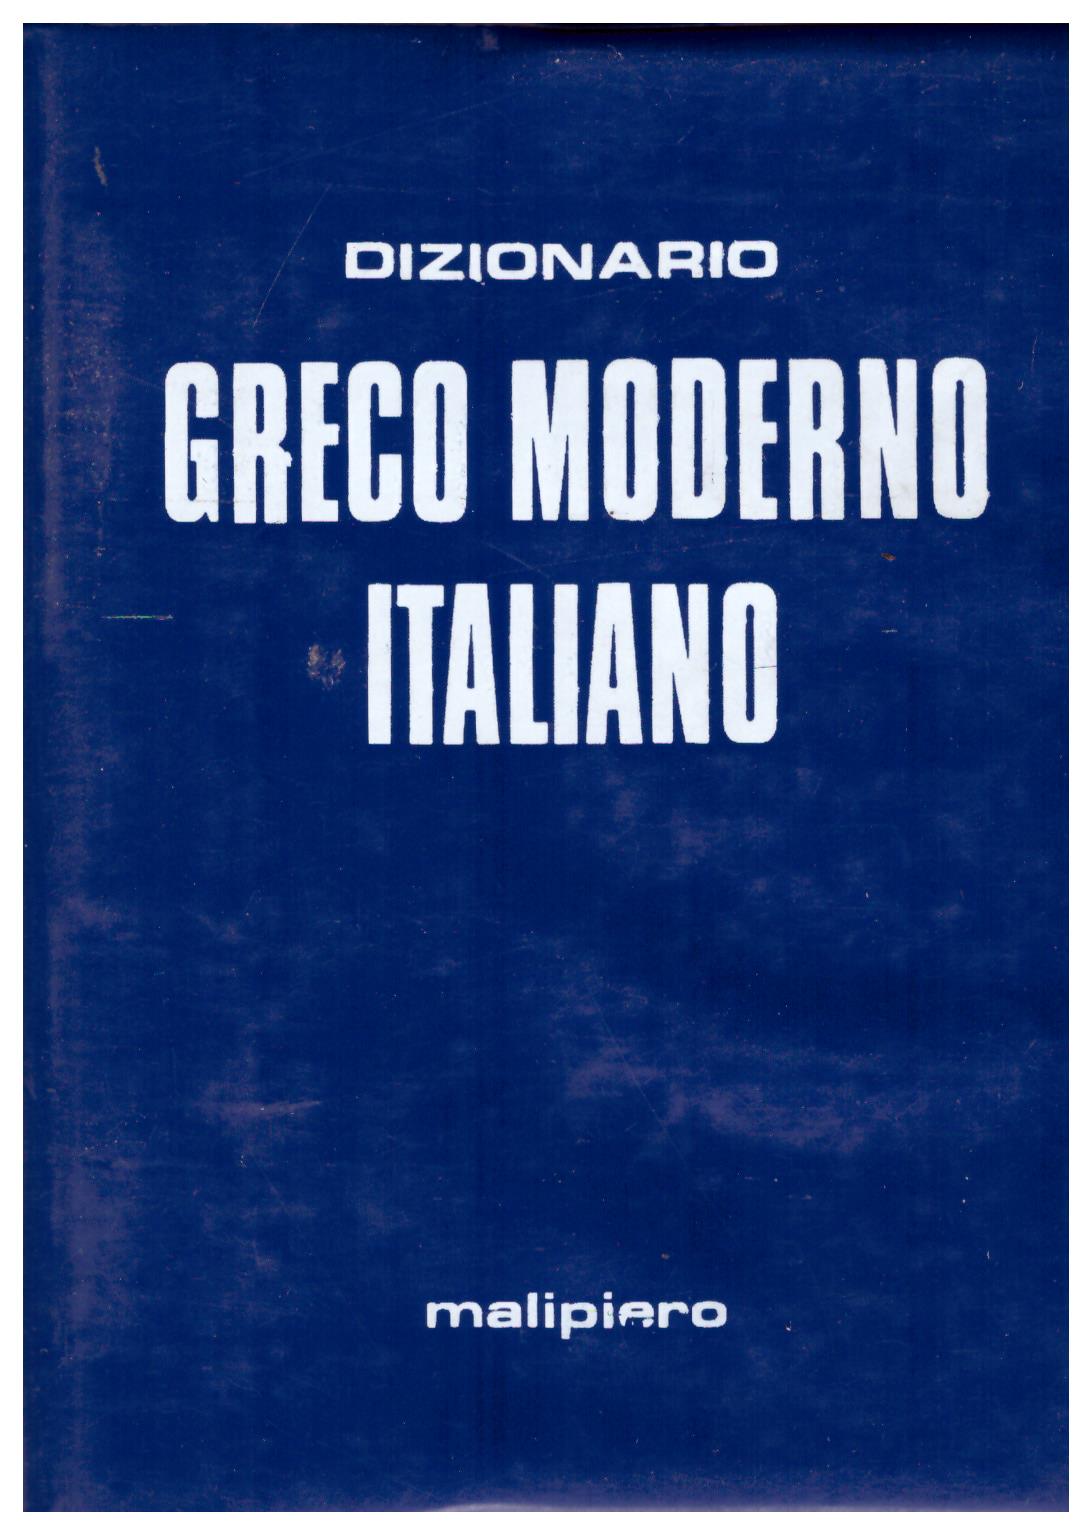 Dizionario Greco moderno italiano